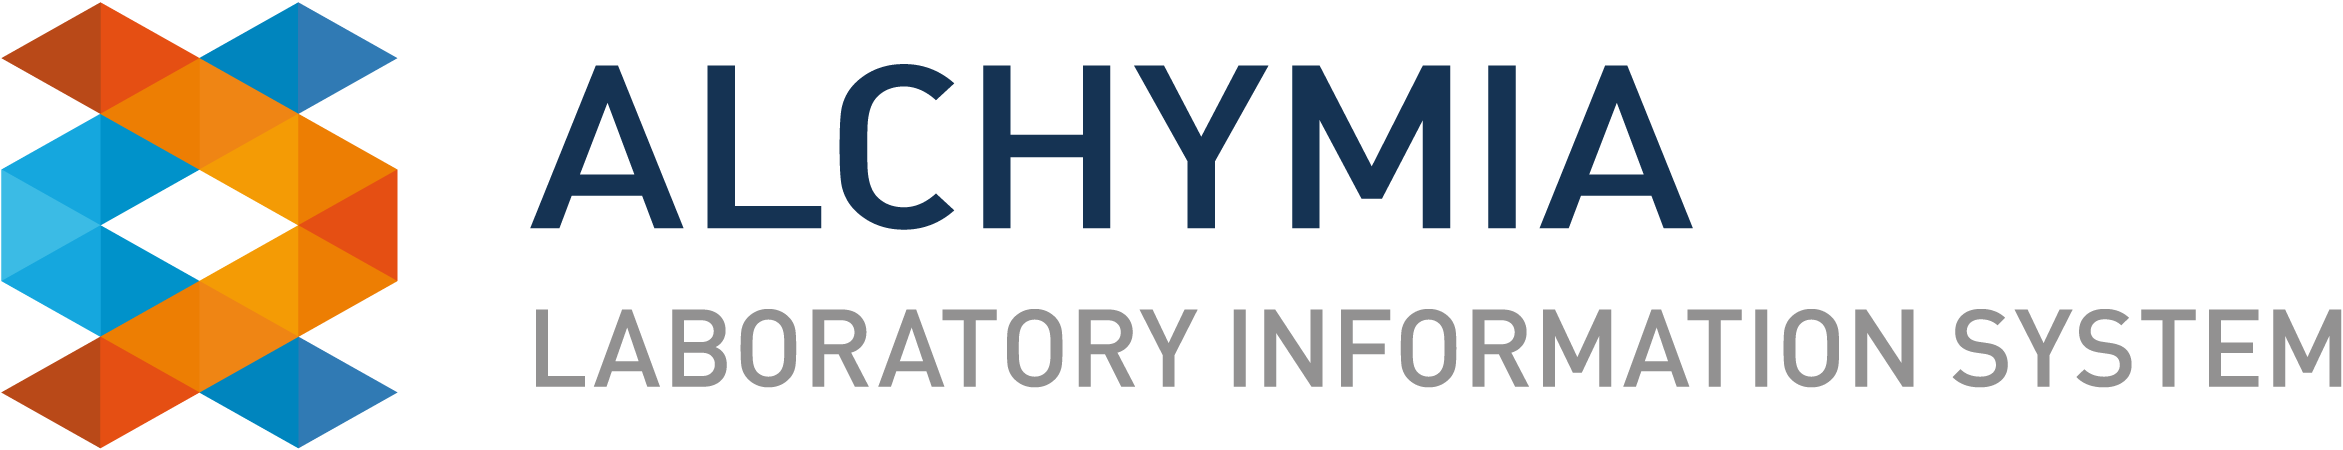 logo_AlchymiA_web